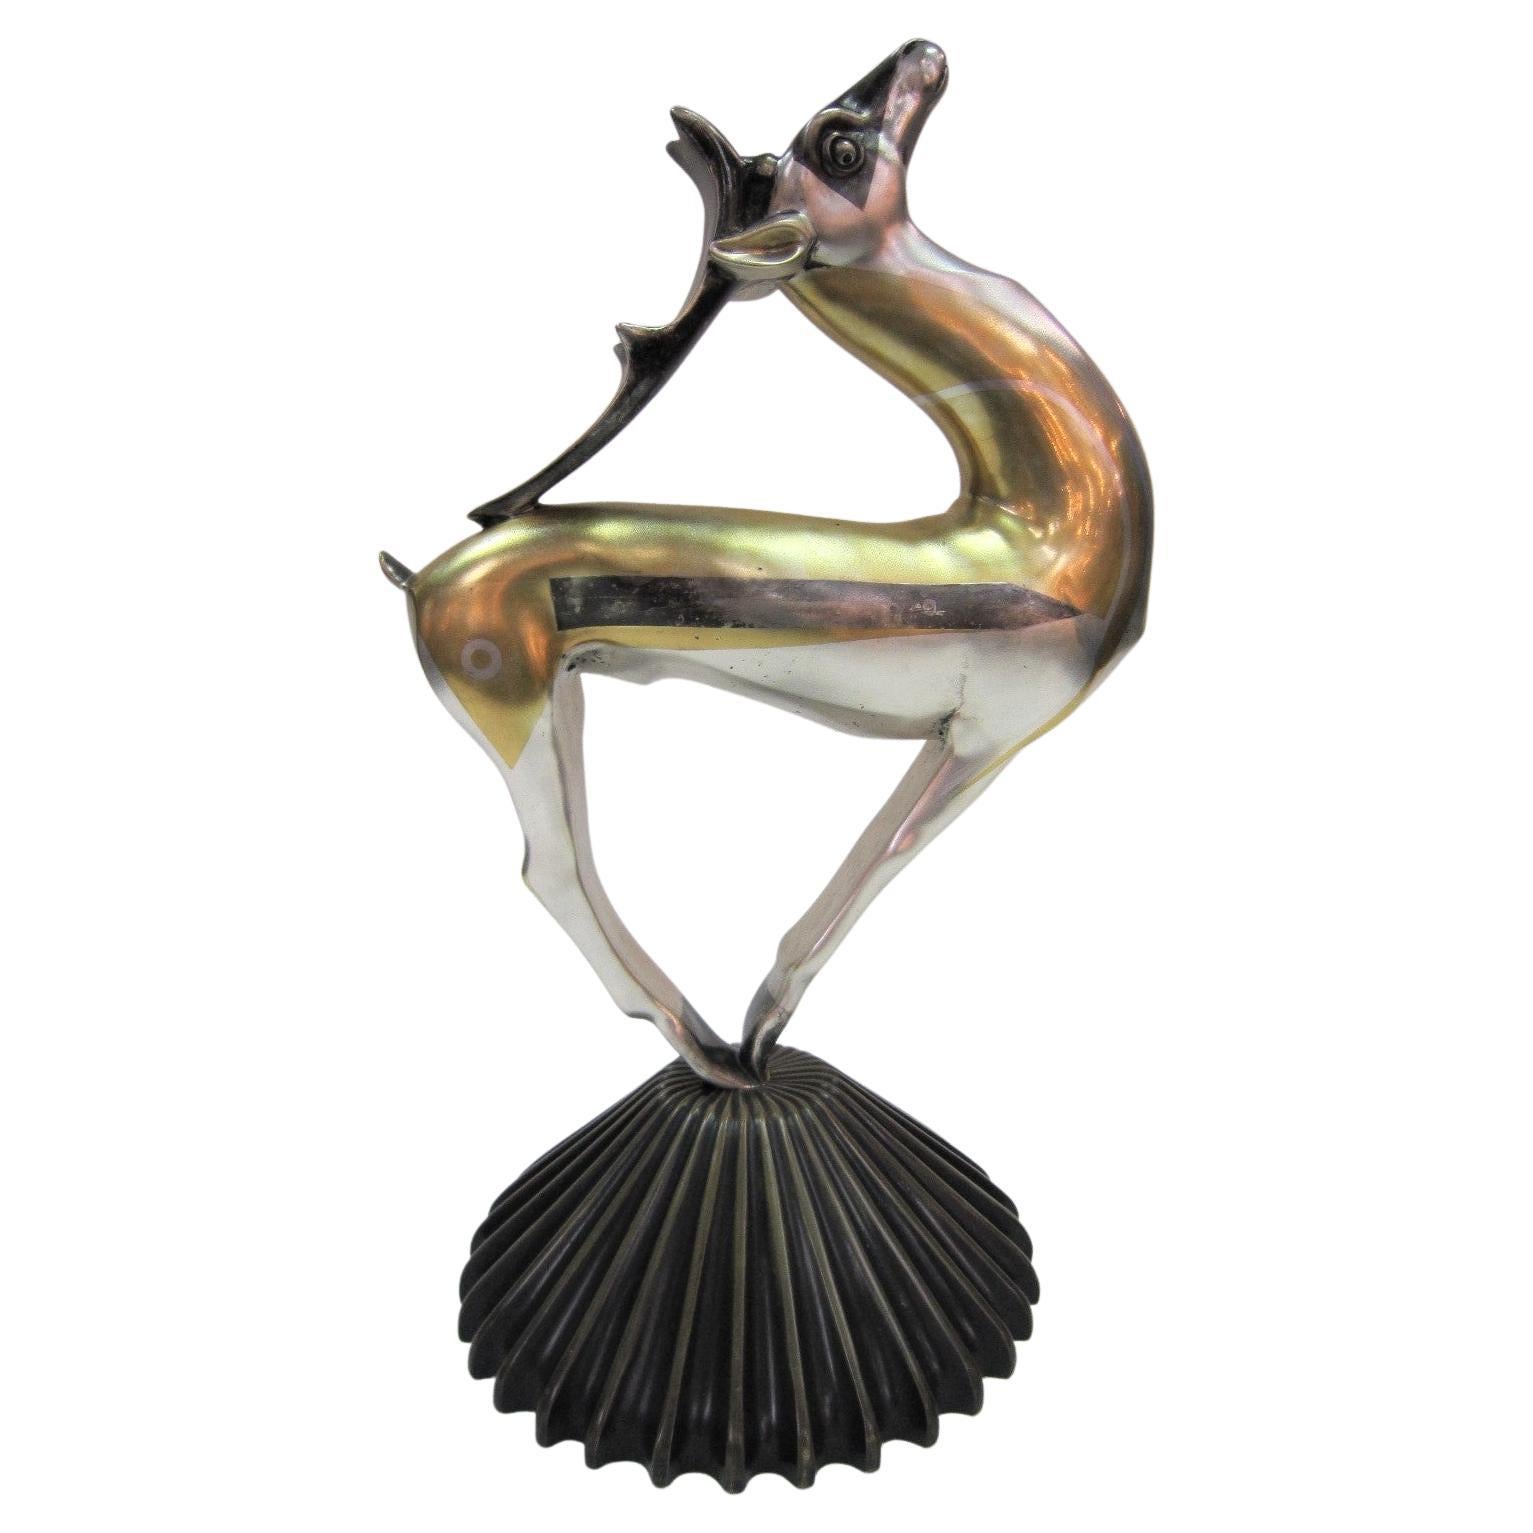 Grand vase Art Déco français en bronze doré et argenté représentant une gazelle stylisée A. Klty